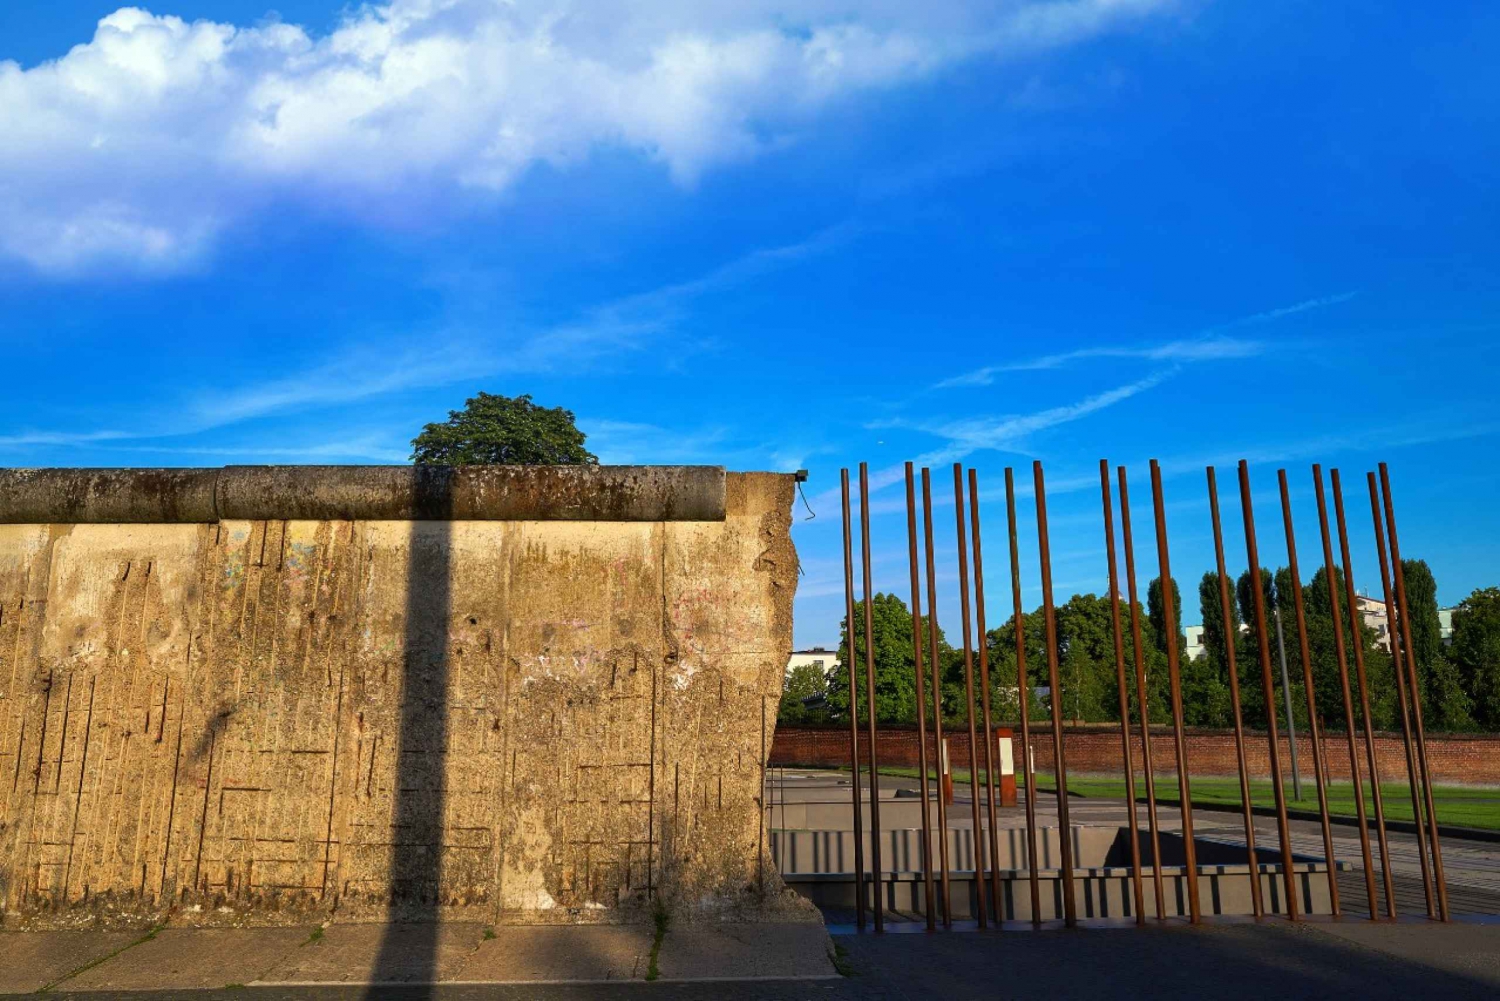 Berlin: Historia zimnej wojny i mur berliński - wycieczka z przewodnikiem